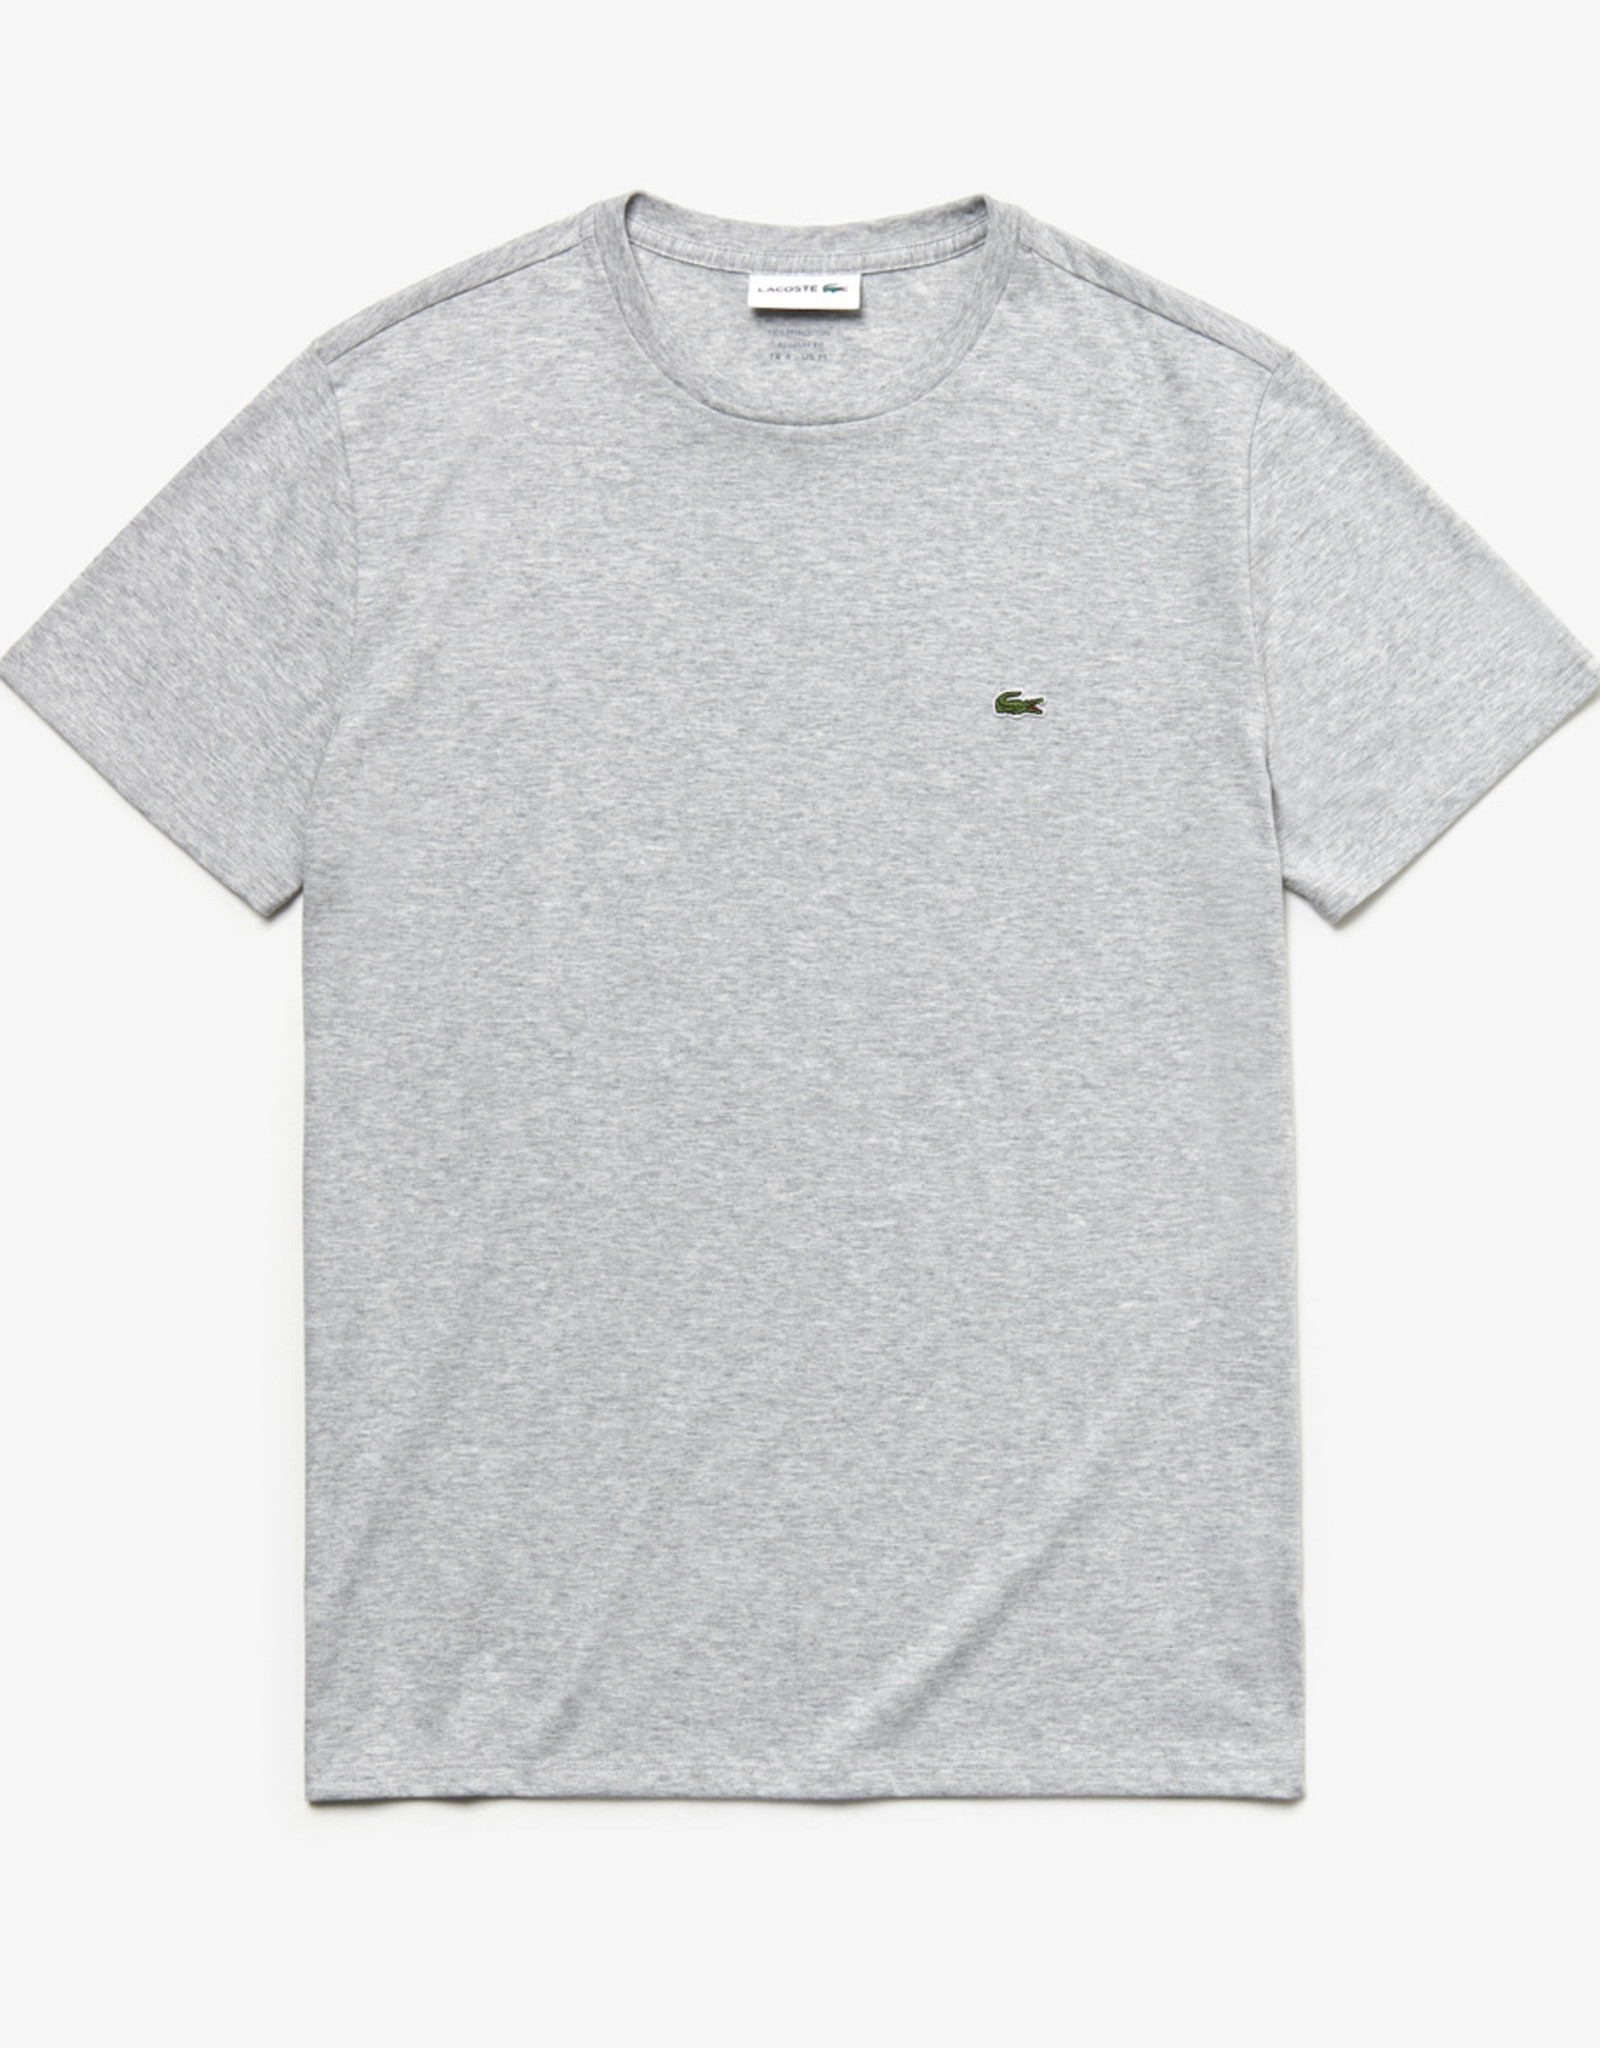 Lacoste Lacoste T-Shirt Regular Fit 100% Pima Cotton